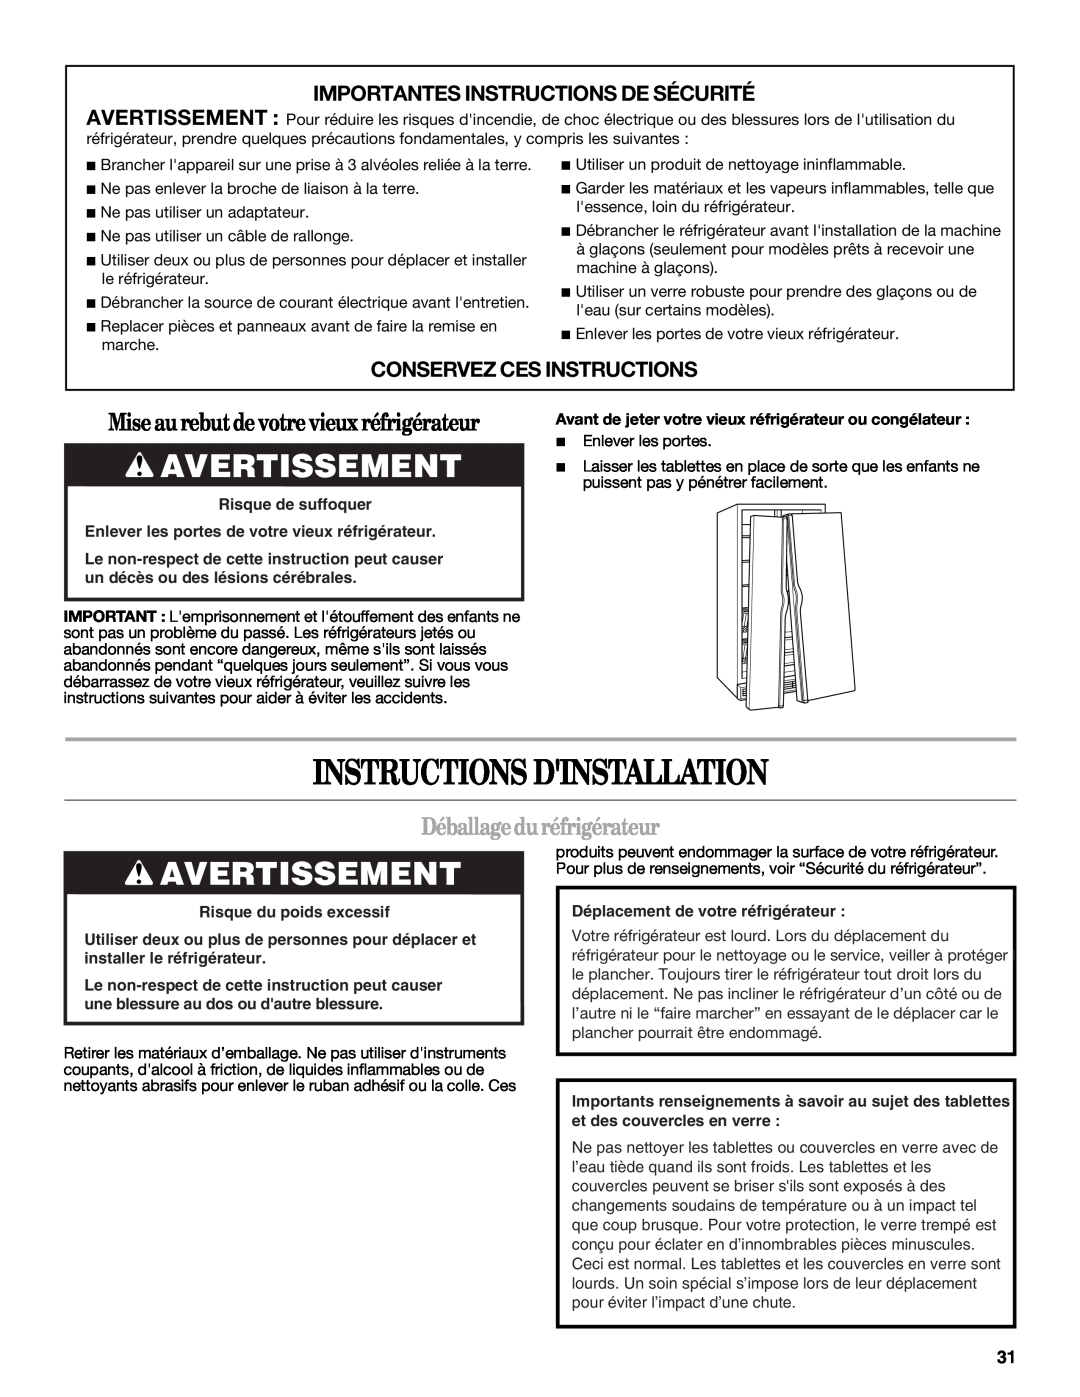 Whirlpool GC1SHAXMB00 warranty Instructions Dinstallation, Avertissement, Miseau rebutdevotrevieuxréfrigérateur 